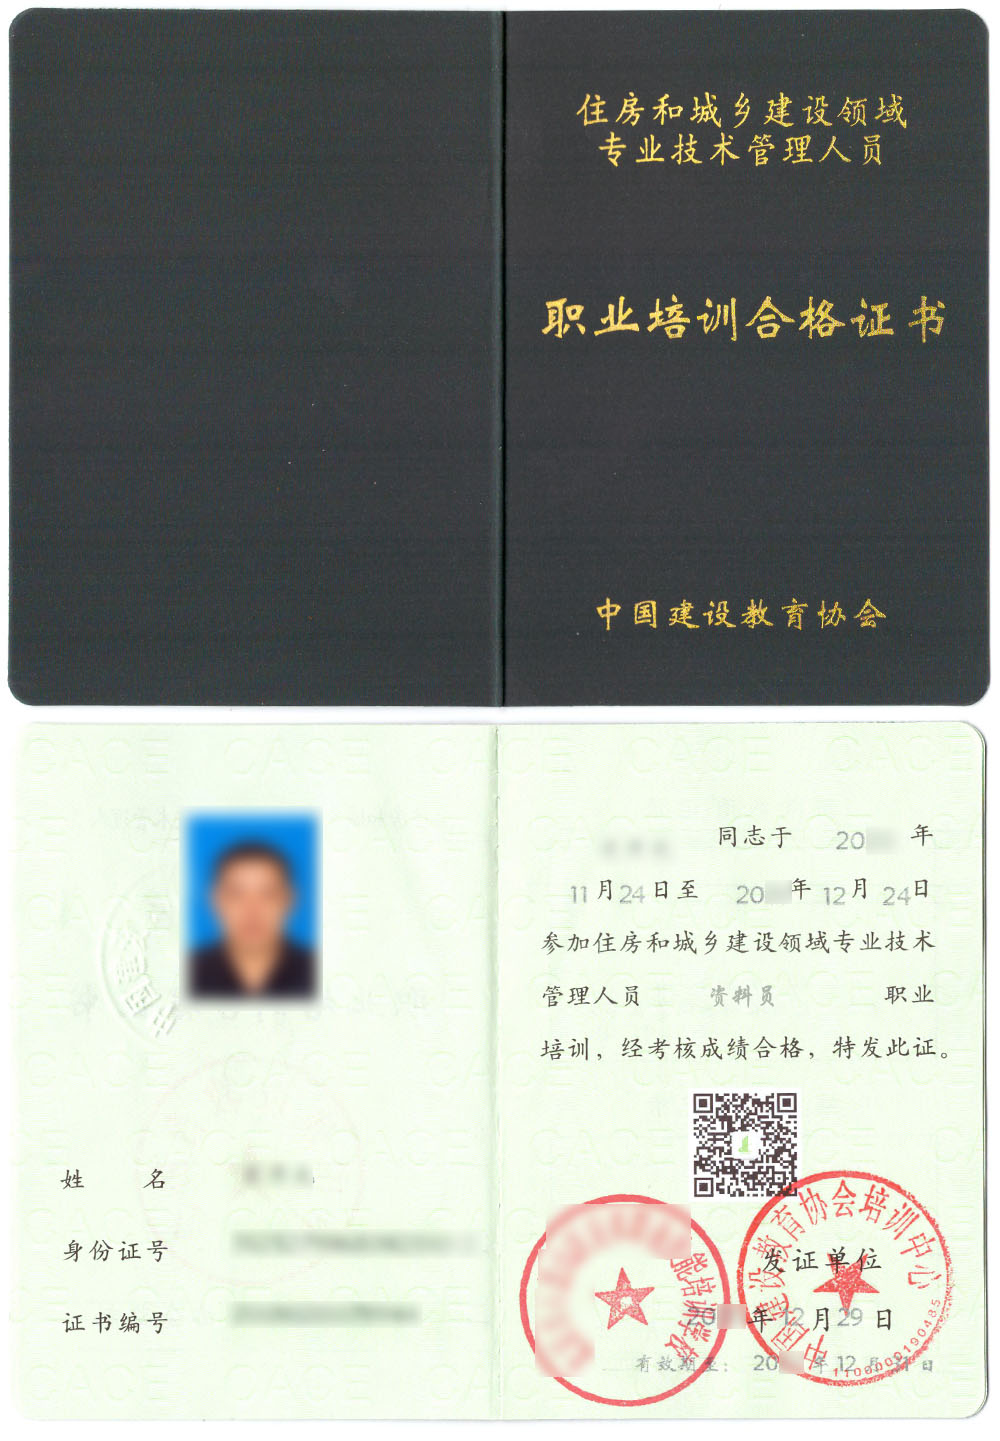 中国建设教育协会 住房和城乡建设领域专业技术管理人员职业培训合格证书 资料员证书样本